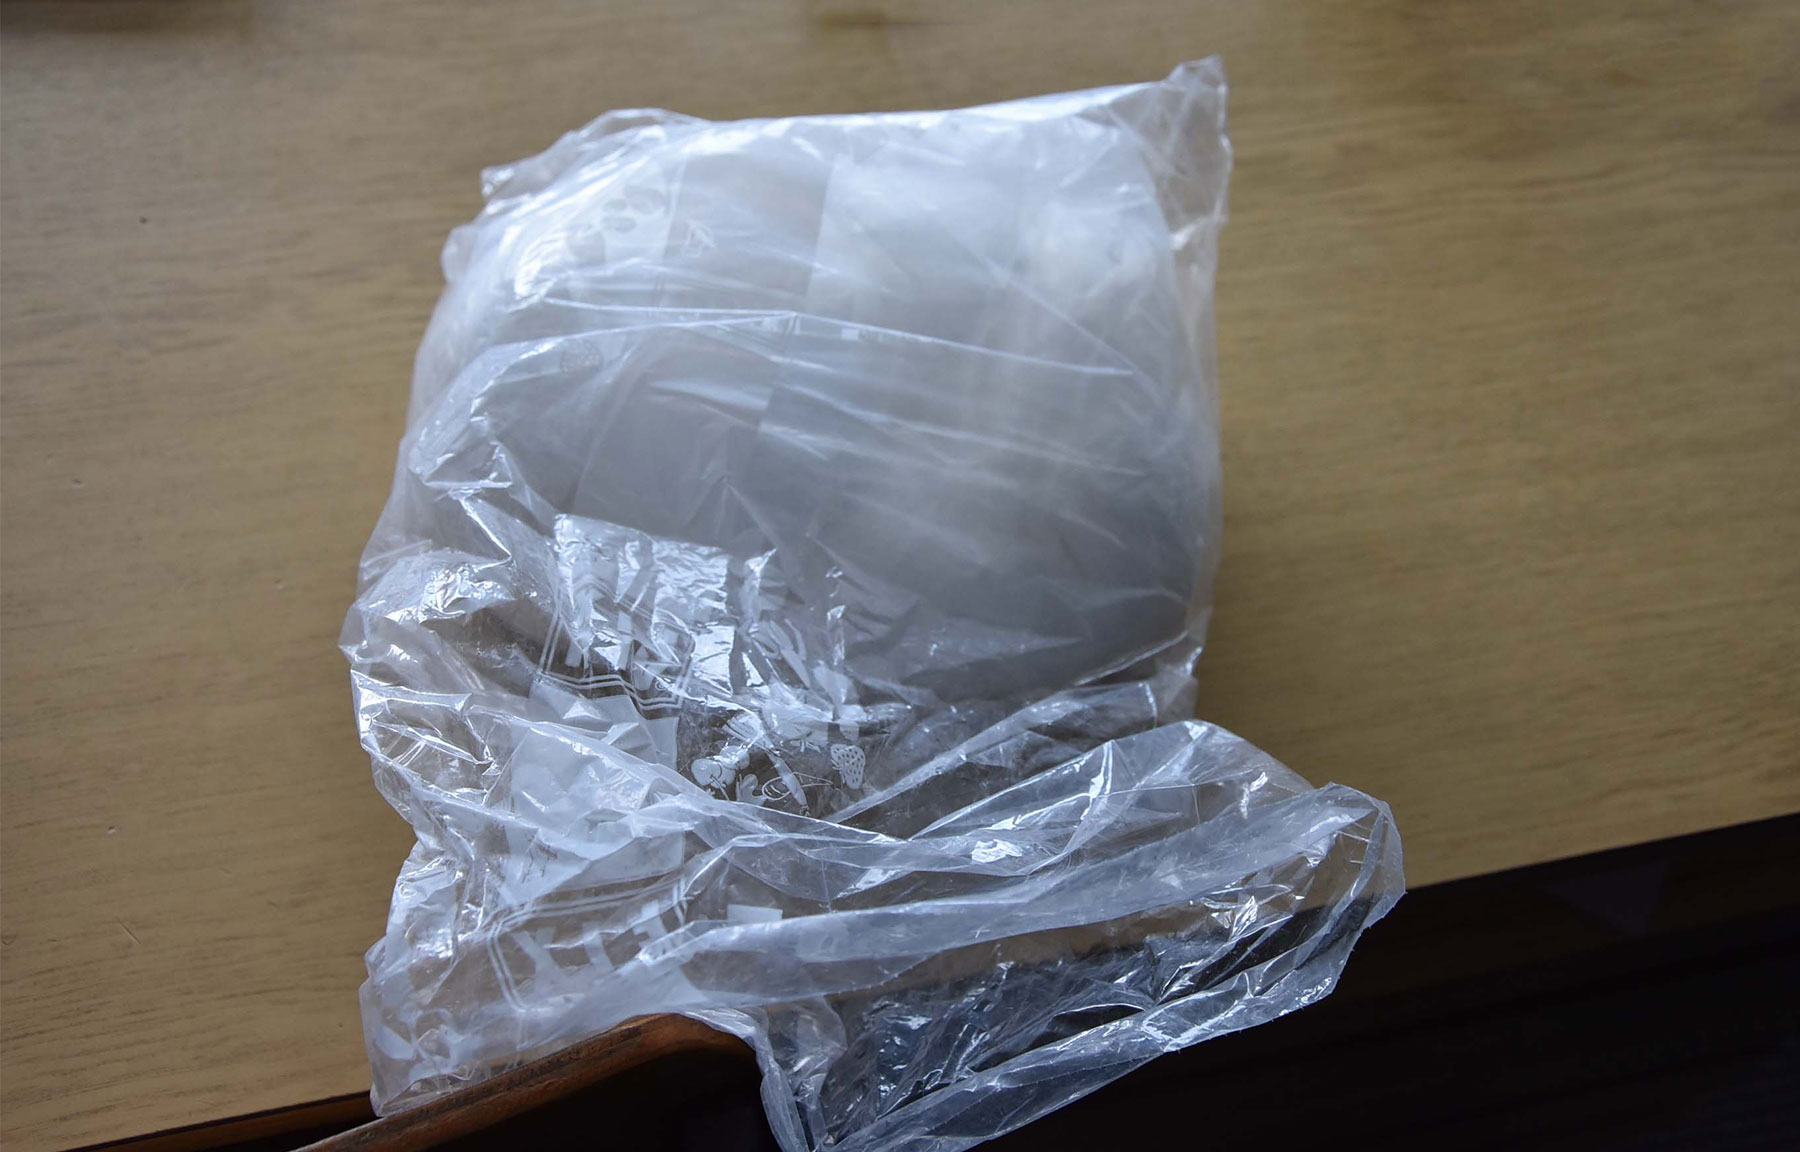 Policija kod osumnjičenog pronašla i zaplenila više od dva kilograma amfetamina